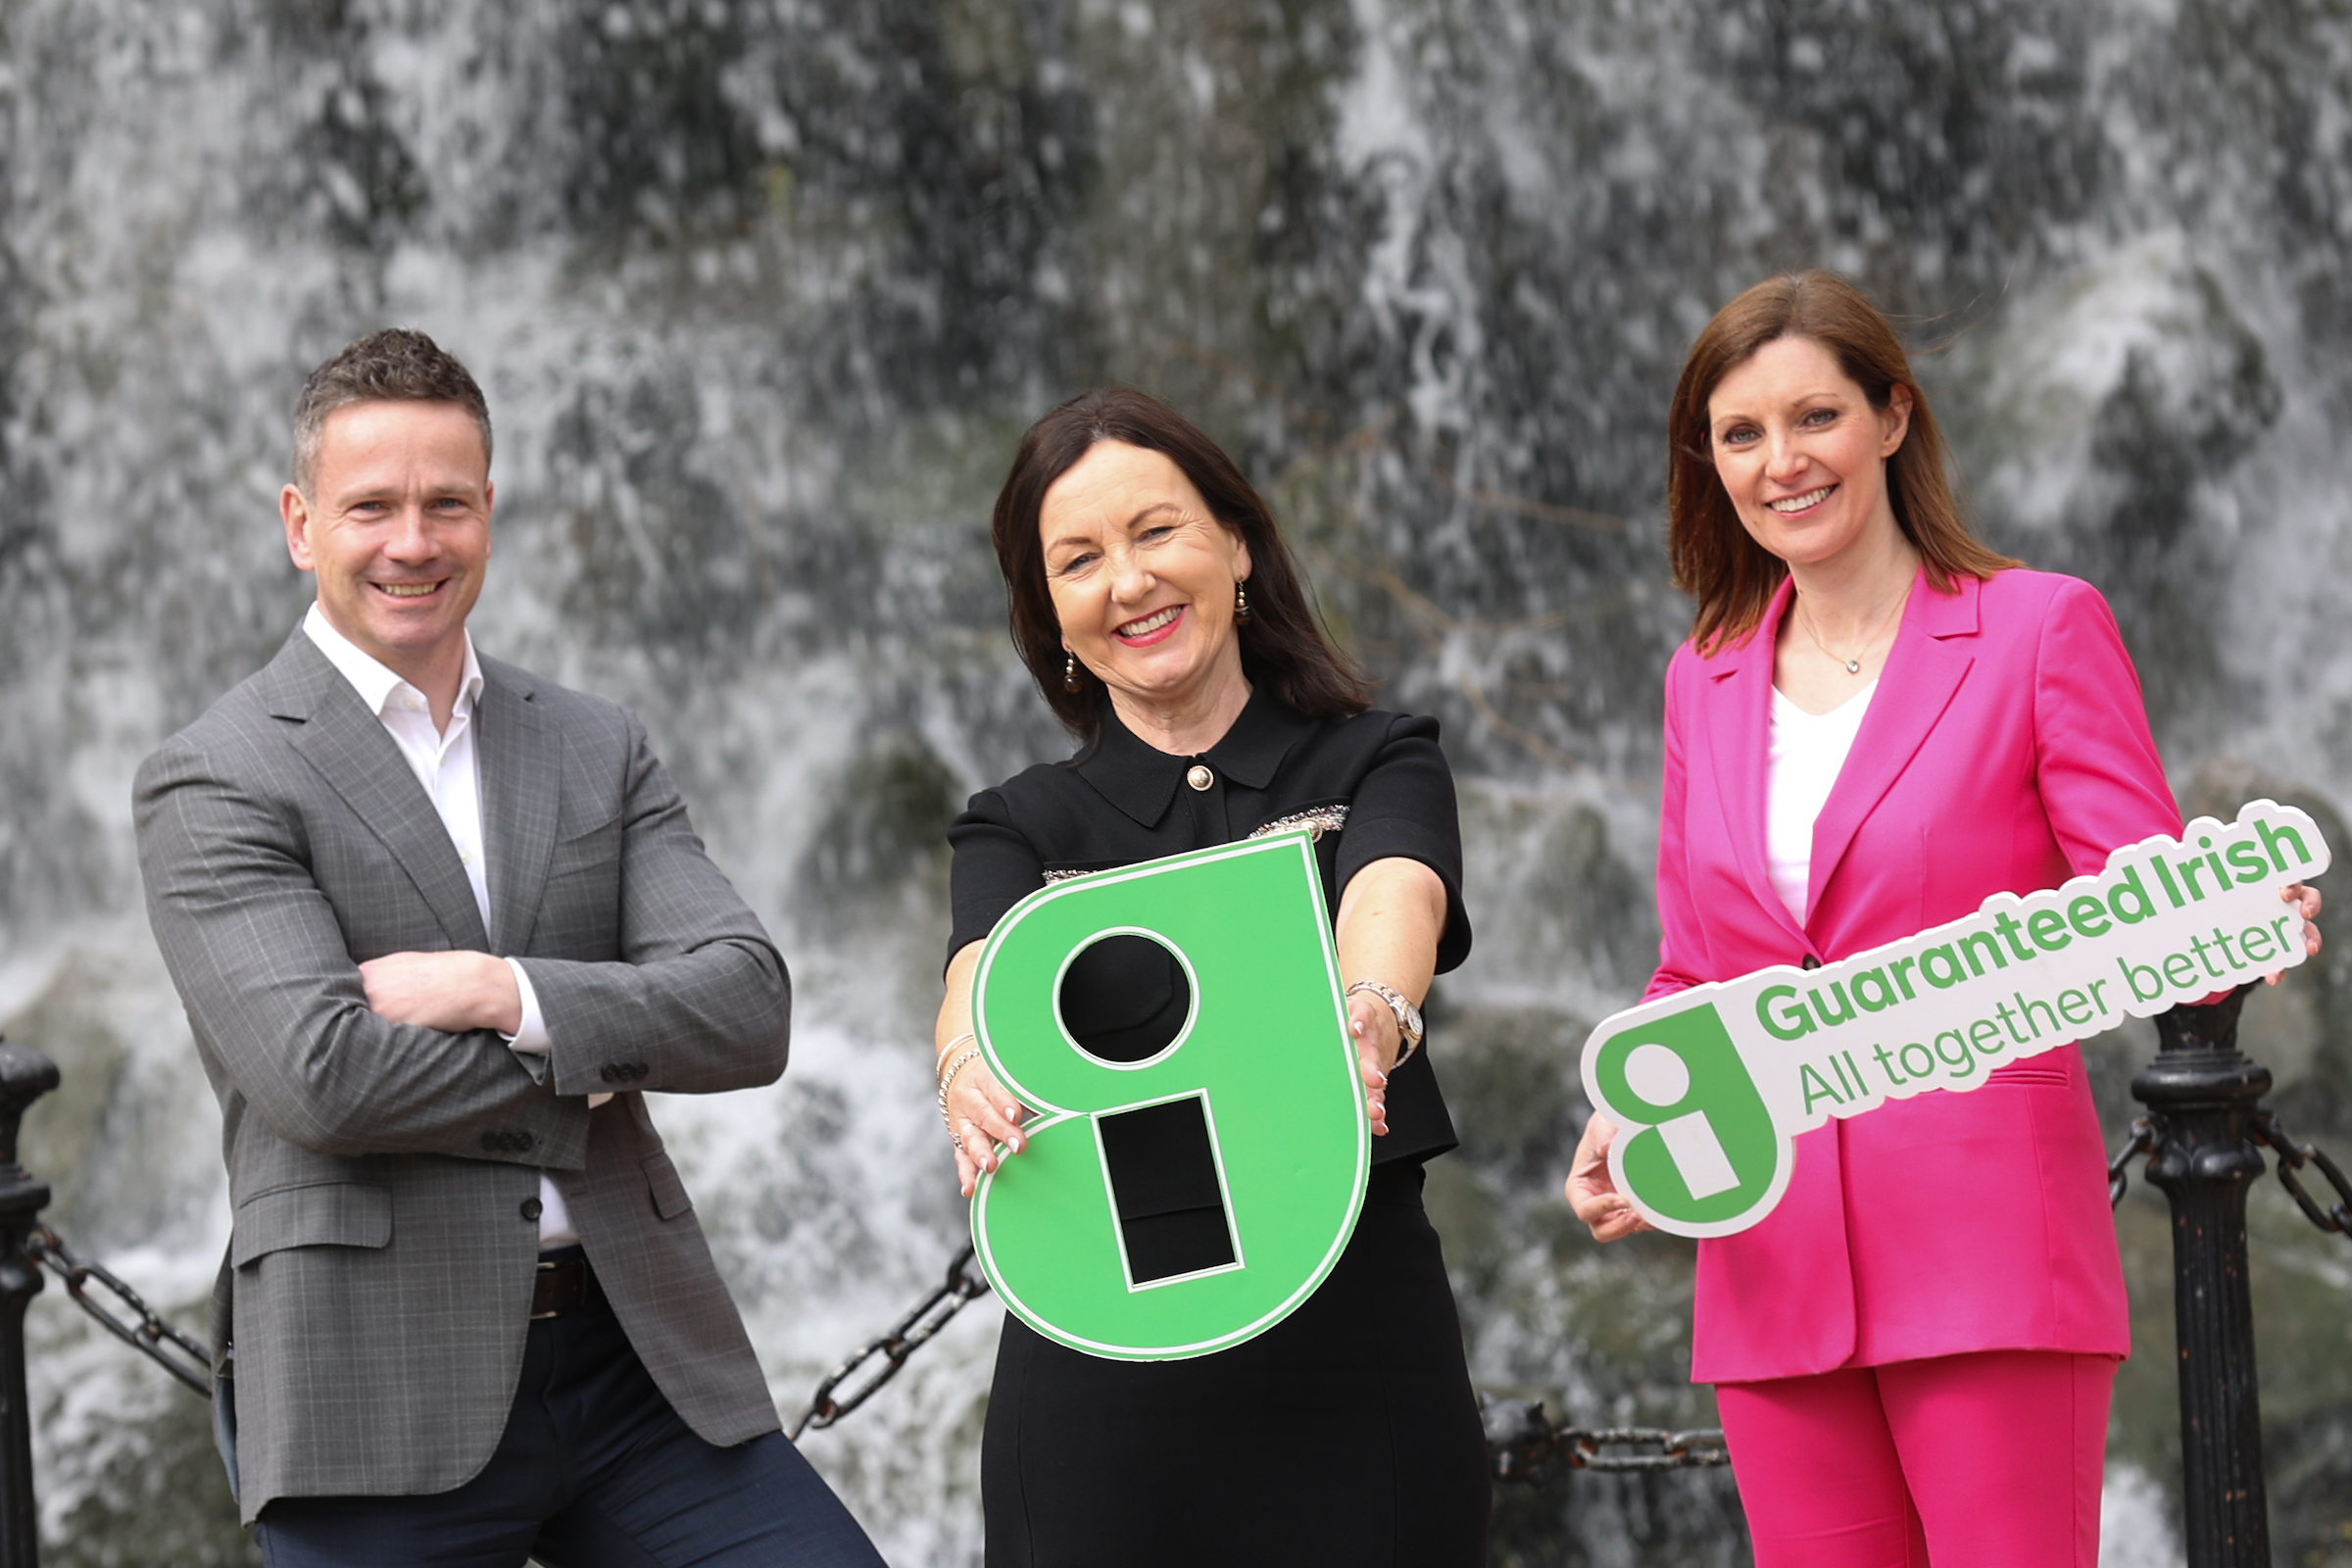 ‘Guaranteed Irish CEO Alumni’ Announces KPMG as Partner